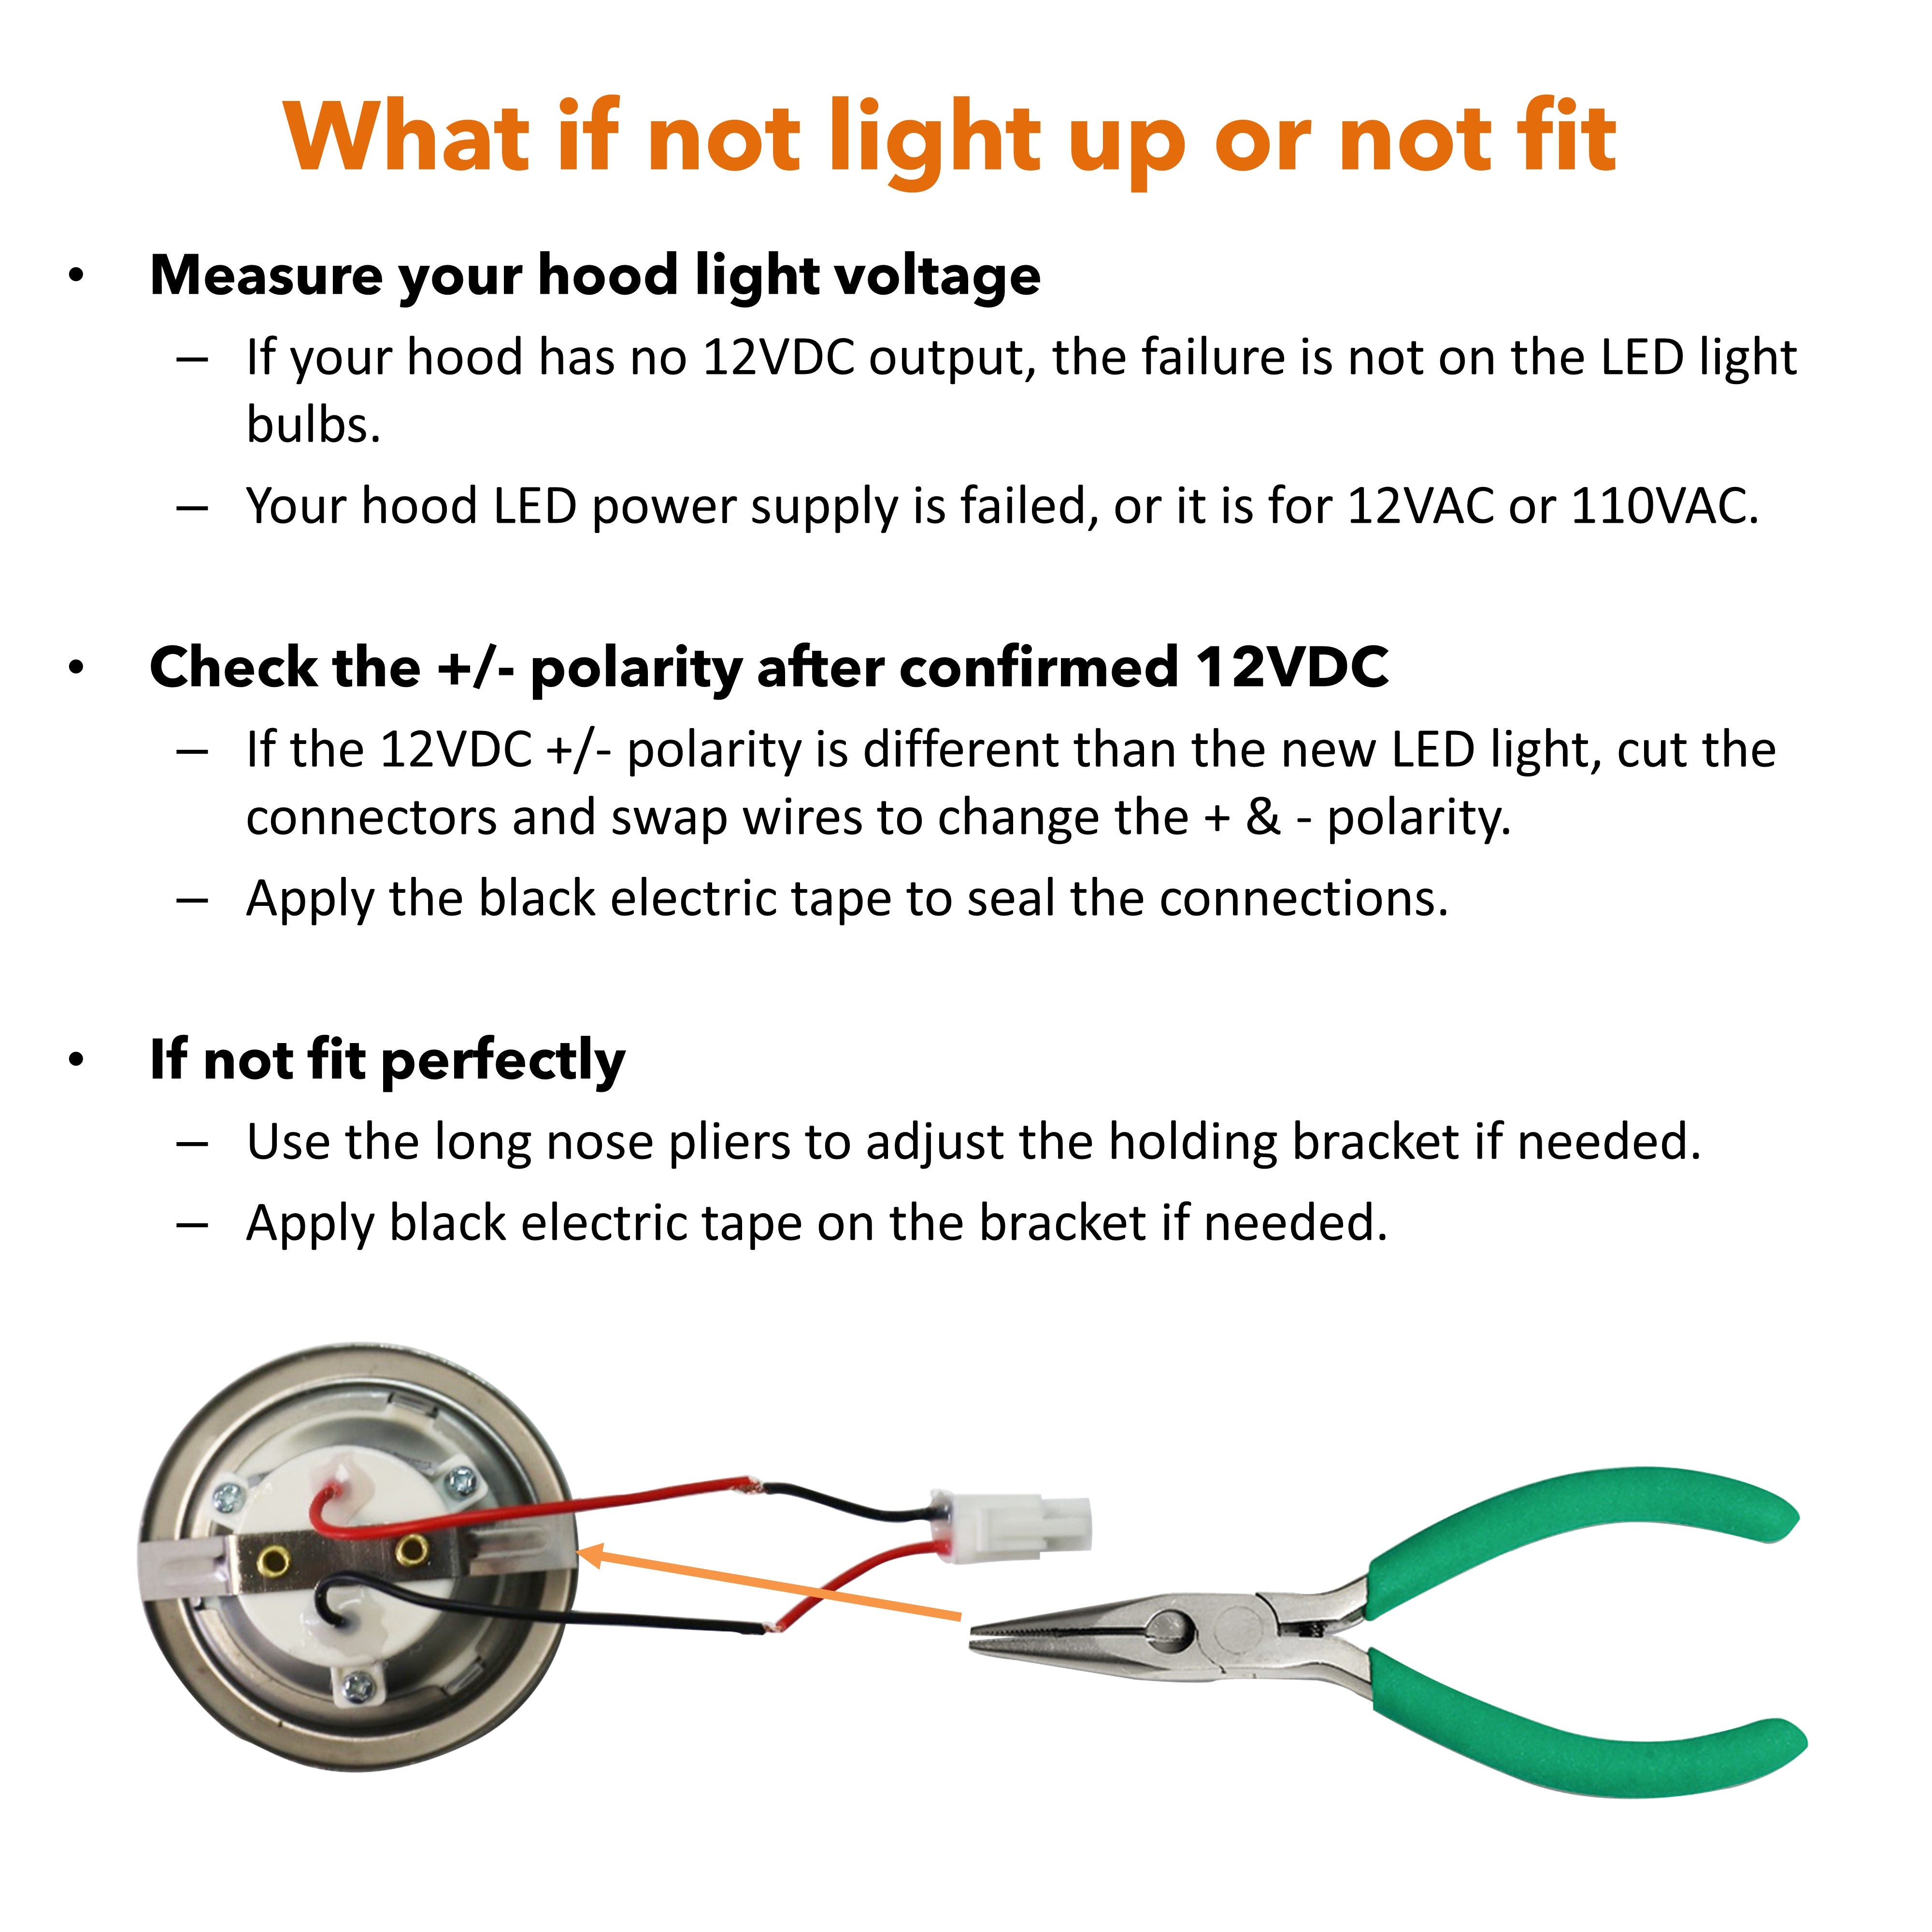 [2-3/4" Flat Edge] 2 Pcs of 12VDC LED Lights for 2023 Awoco RH-C06, RH-R06 and RH-SP06/08 Range Hoods